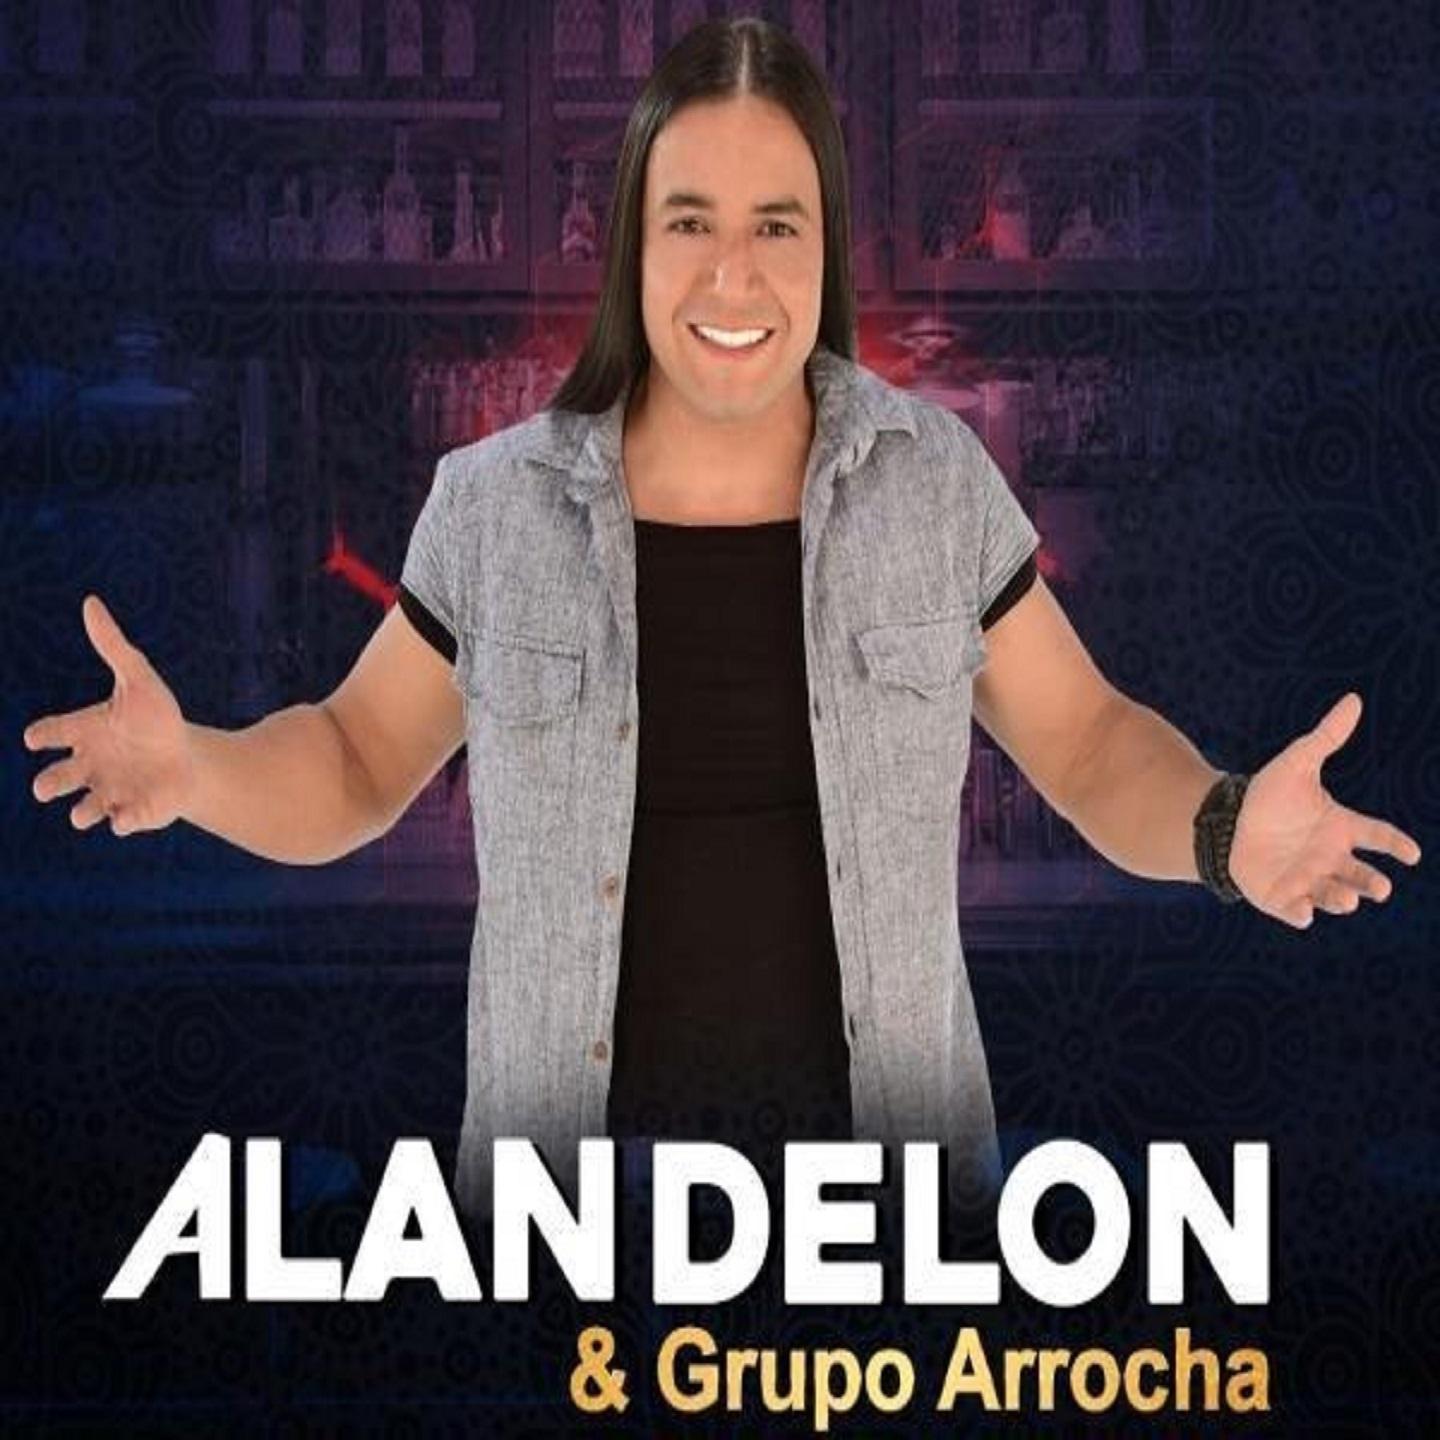 Alan Delon & Grupo Arrocha